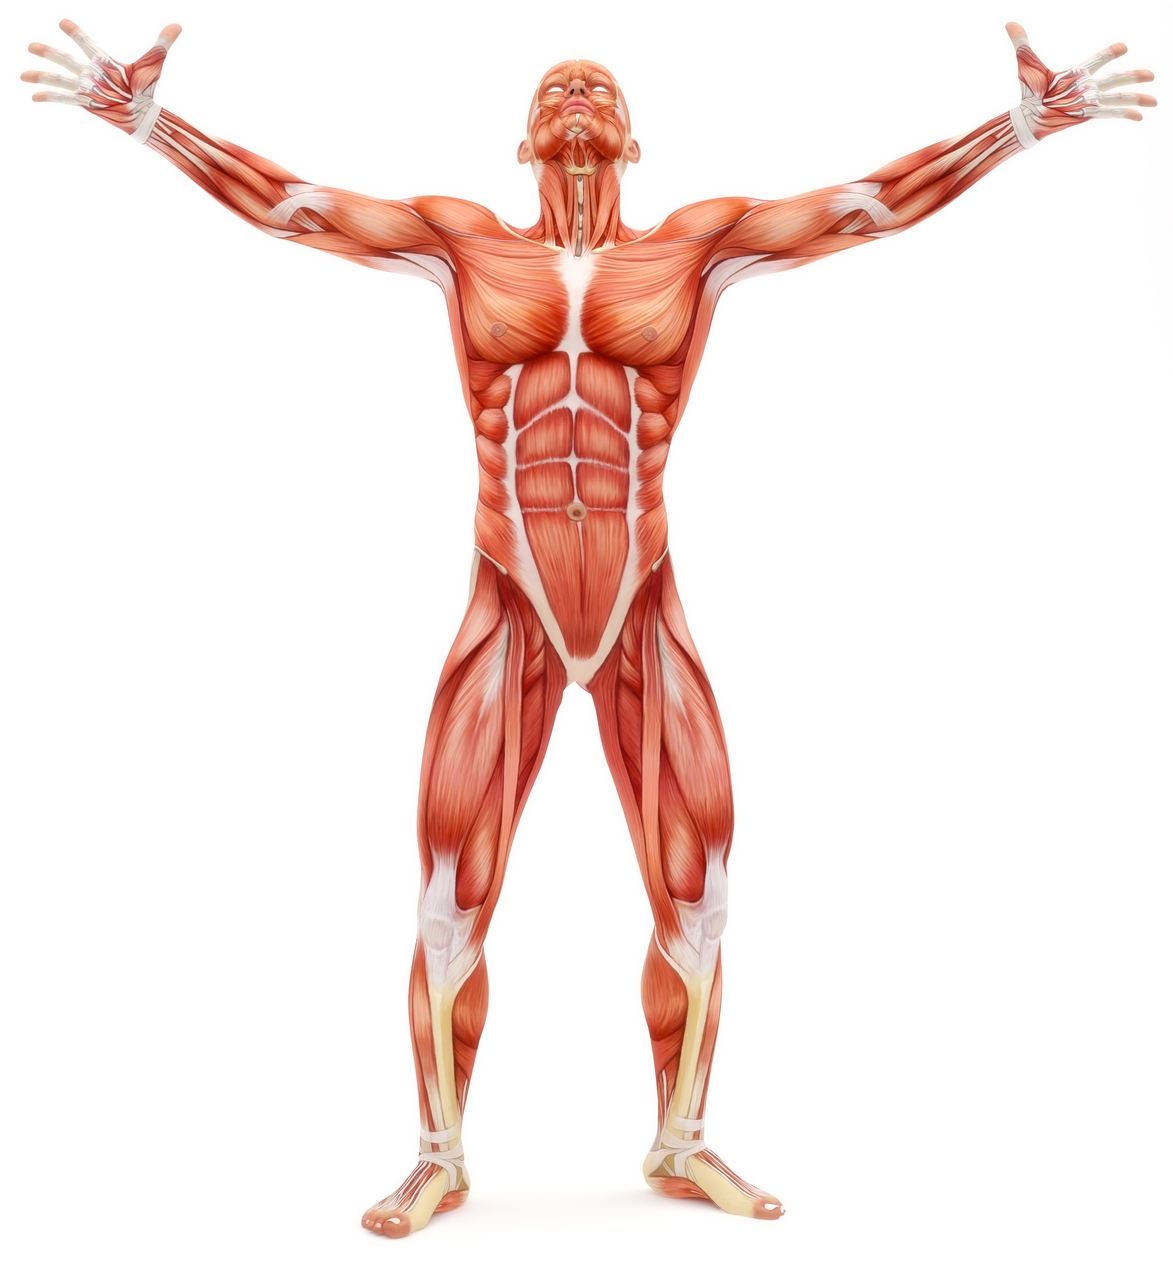 Τεχνητοί μύες: Το ανθρώπινο σώμα συνεχίζει να είναι το χρυσό πρότυπο για τους τεχνητούς μύες